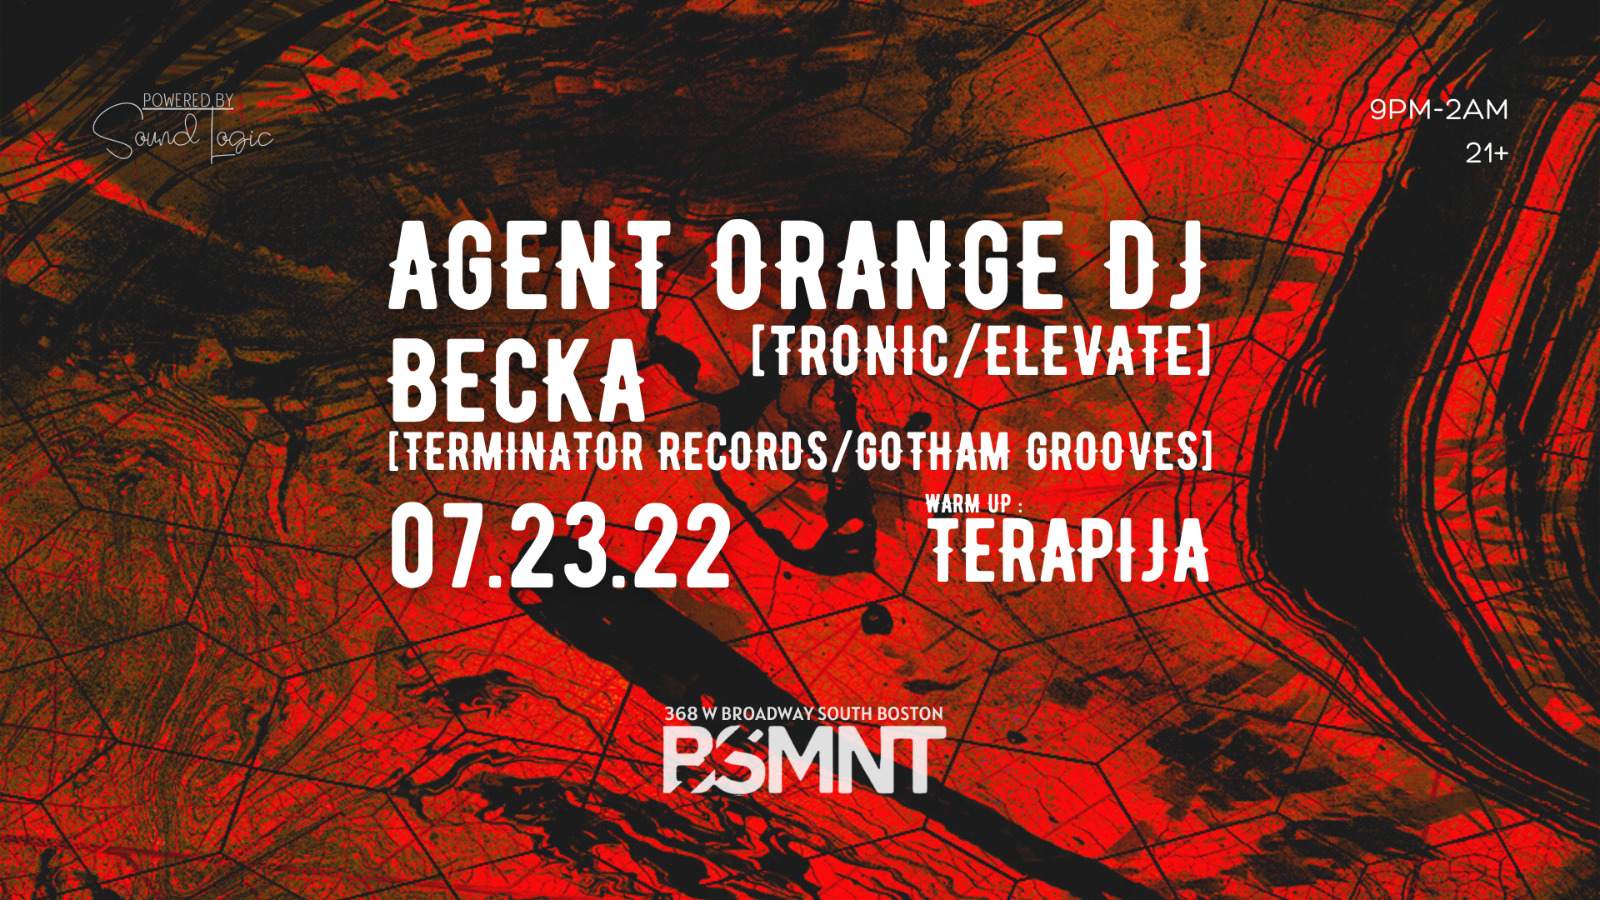 BSMNT presents: Agent Orange DJ, Becka, Terapija - フライヤー表